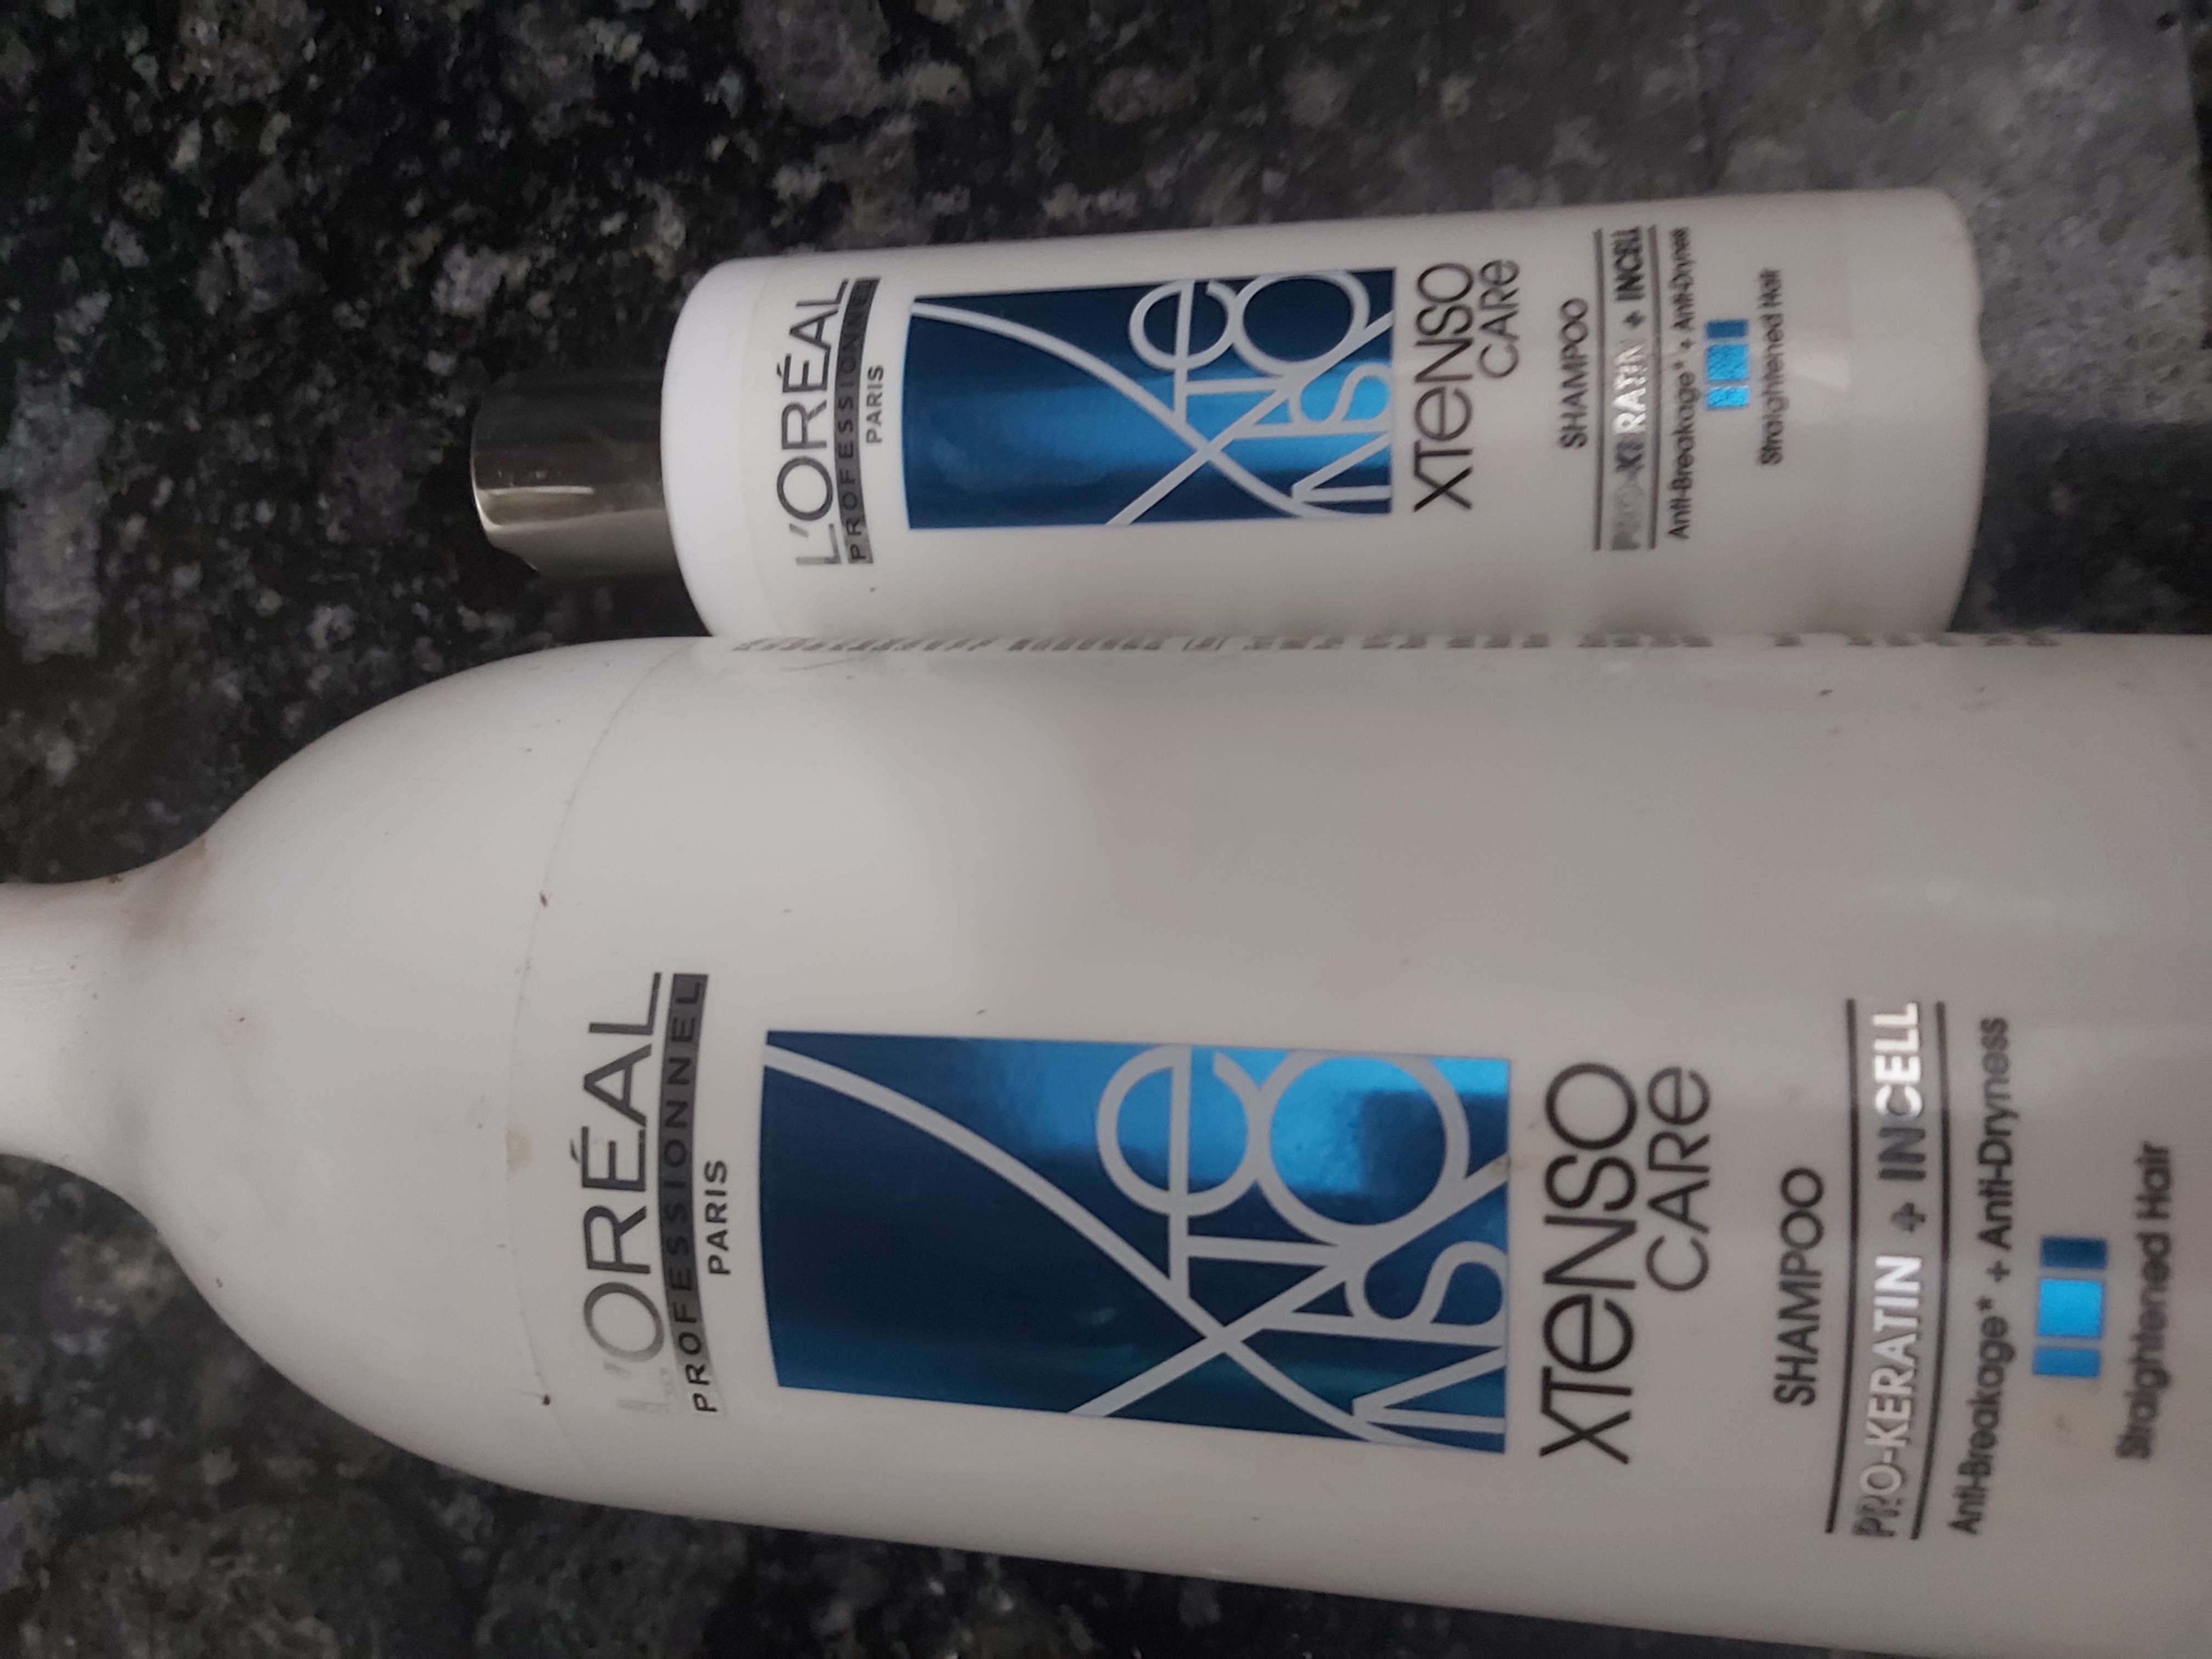 1. "Blue Hair Shampoo for White Hair" by L'Oreal Paris - wide 9